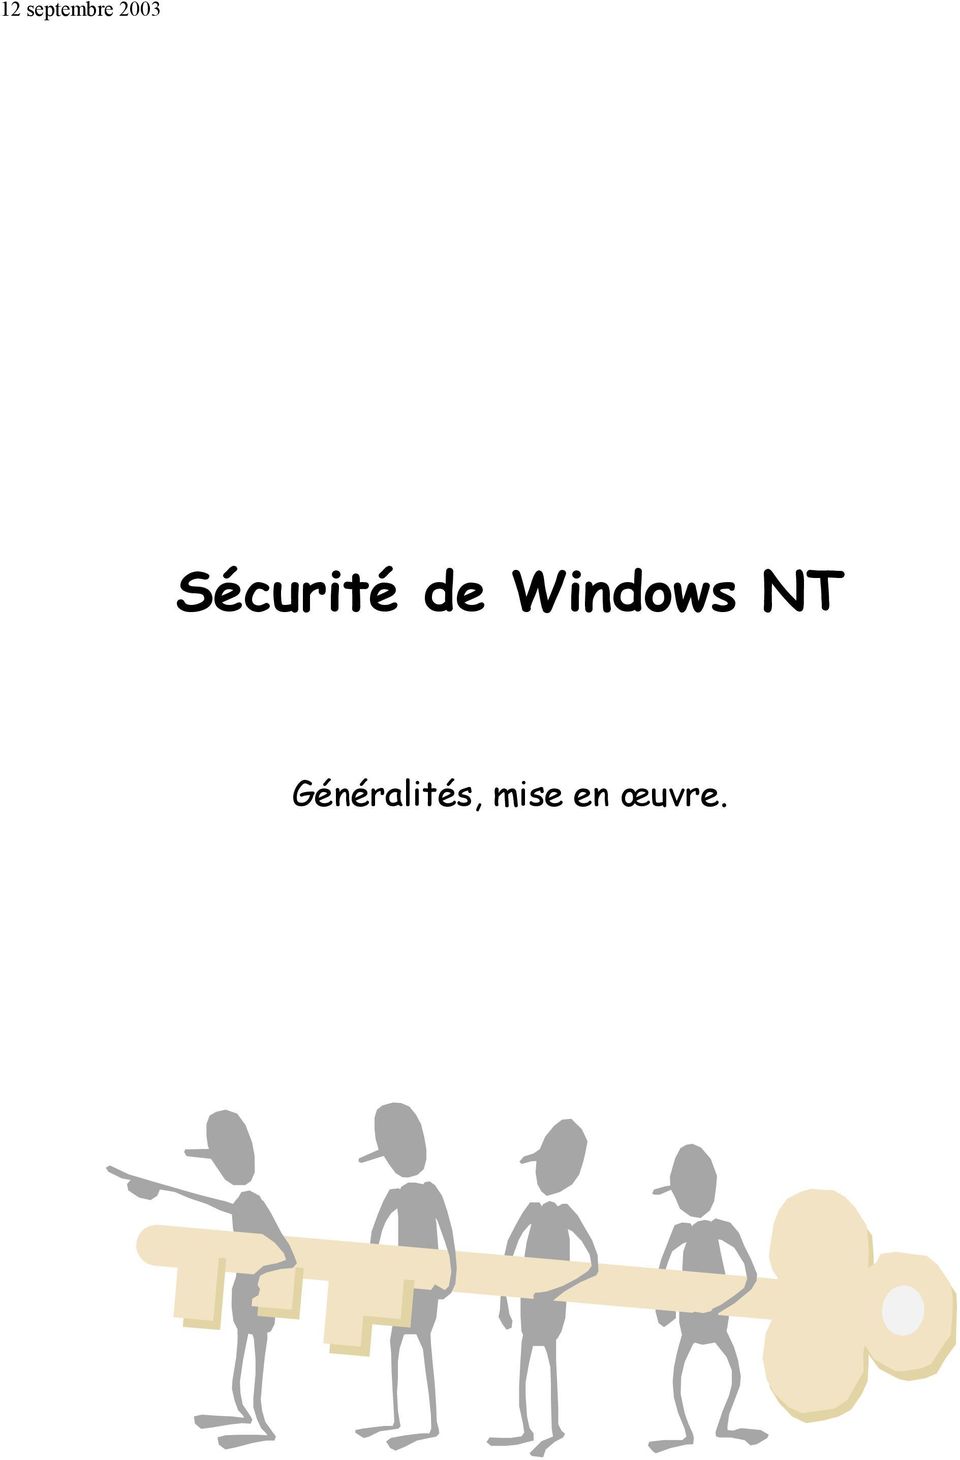 Windows NT